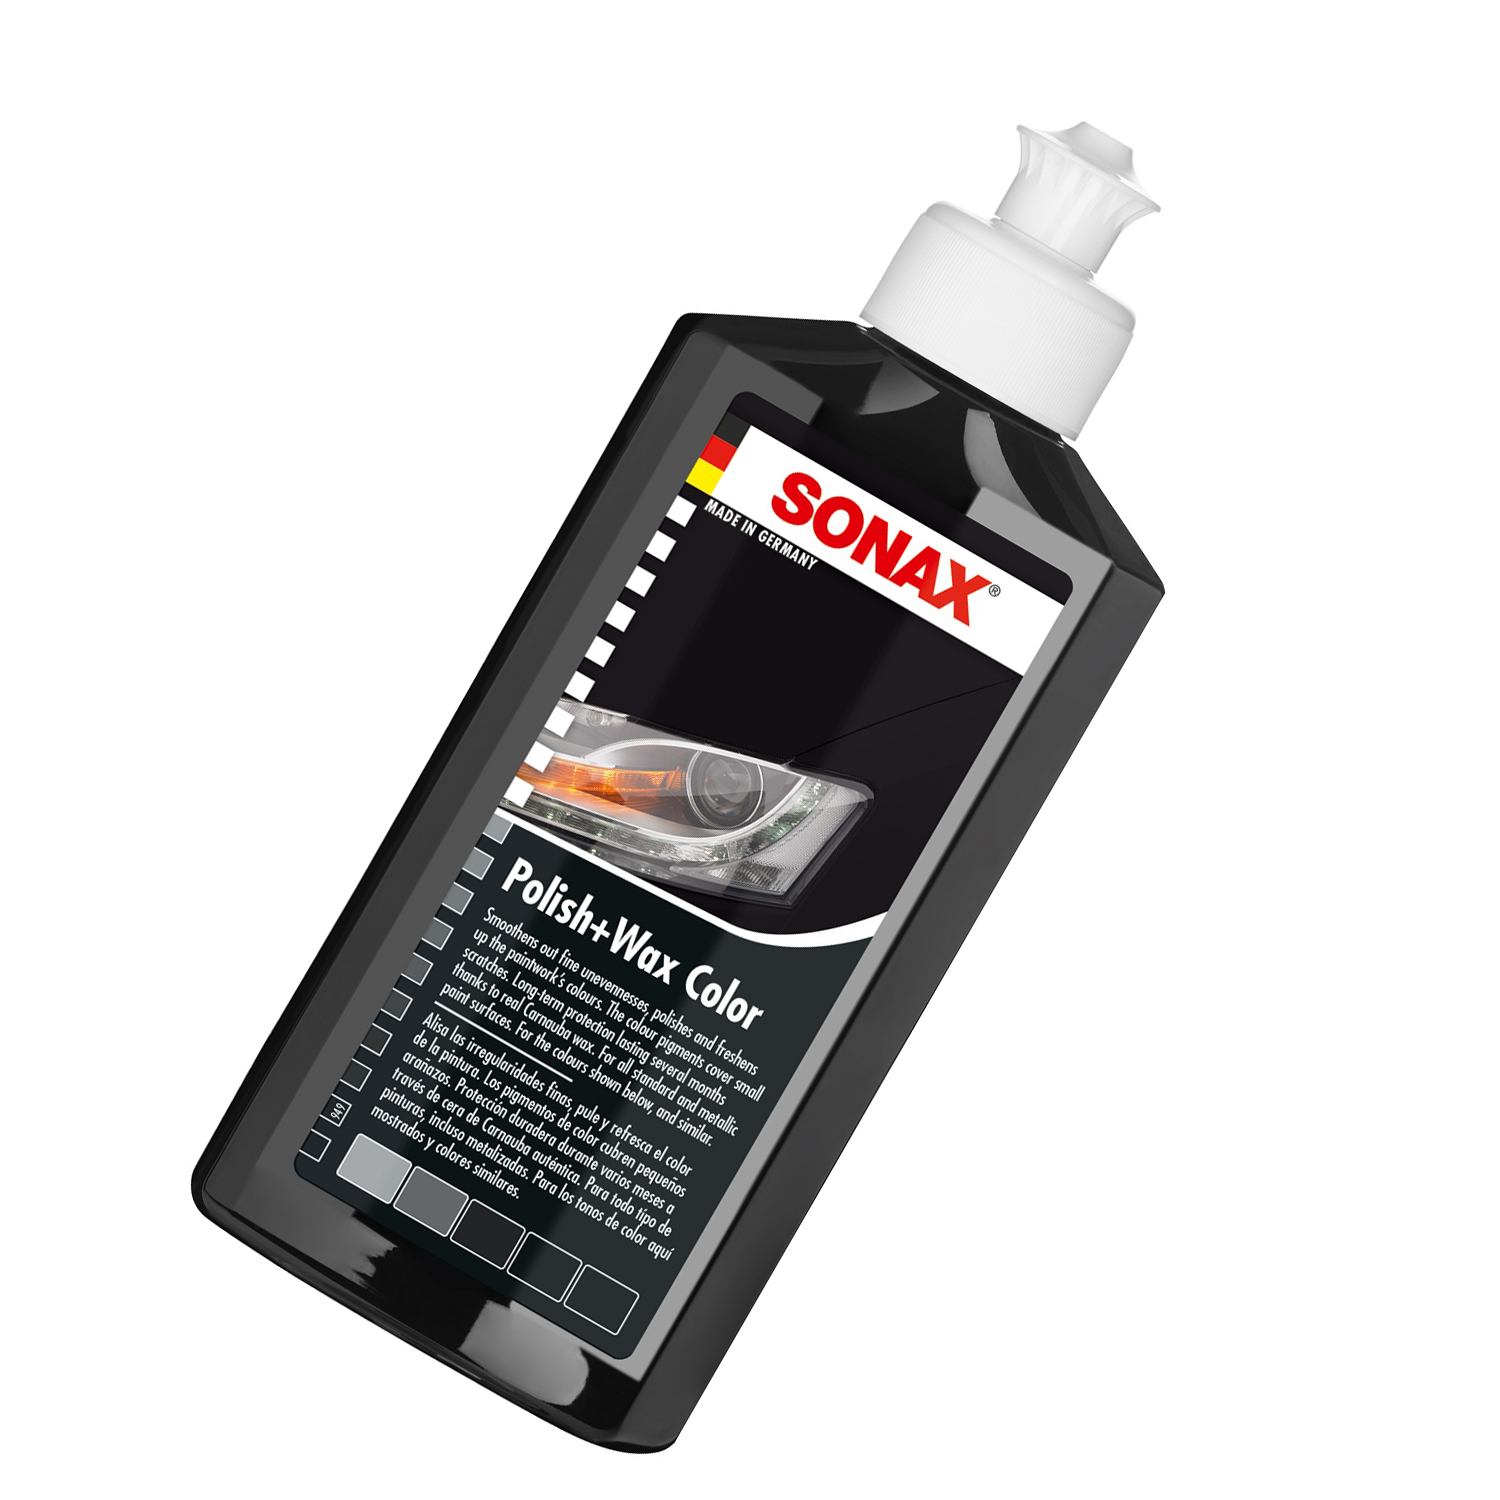 Kem đánh bóng và bảo vệ sơn màu đen xe ô tô Sonax 296141 250ml - tặng 1 khăn 3M màu ngẫu nhiên - Che phủ vết xước nhỏ, phục hồi sơn cũ, tăng độ mịn cho mặt sơn